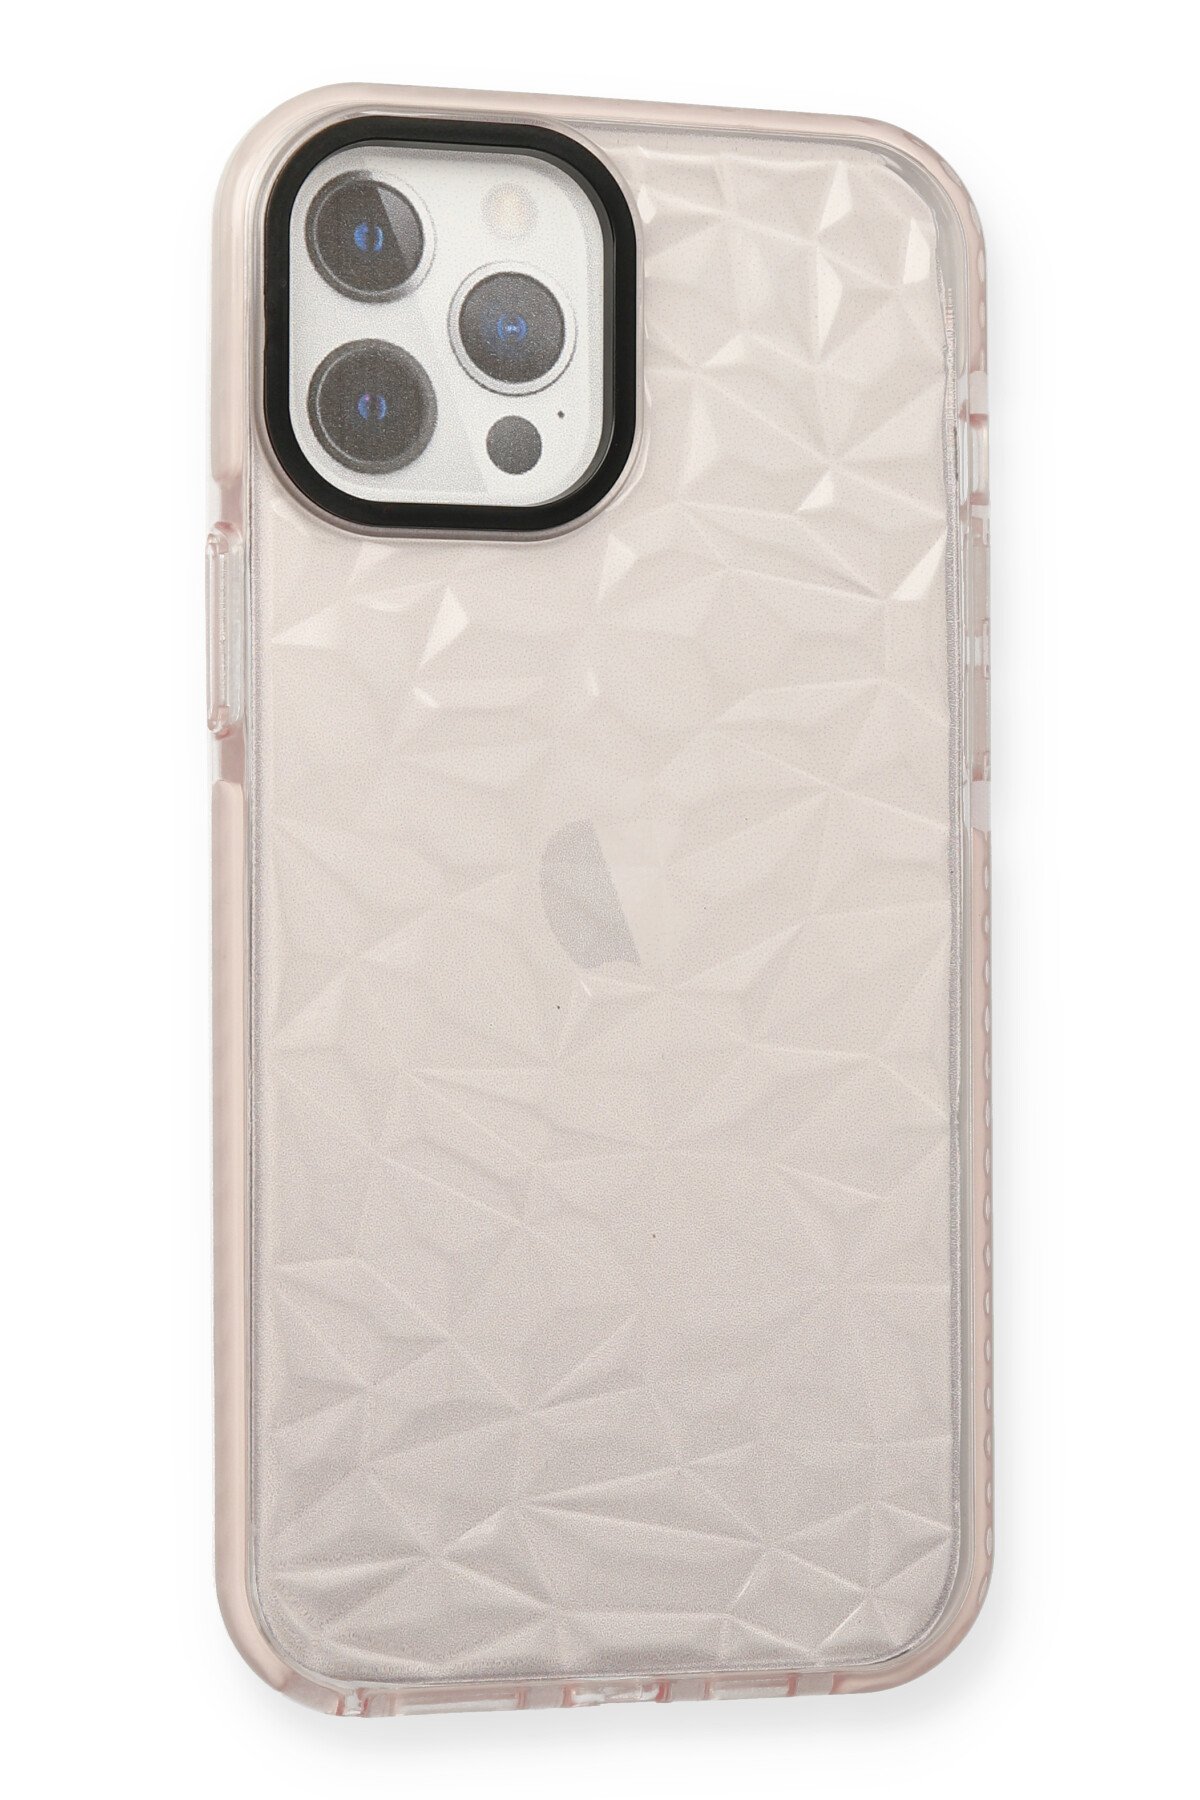 Newface iPhone 12 Pro Max Kılıf Palm Buzlu Kamera Sürgülü Silikon - Yeşil